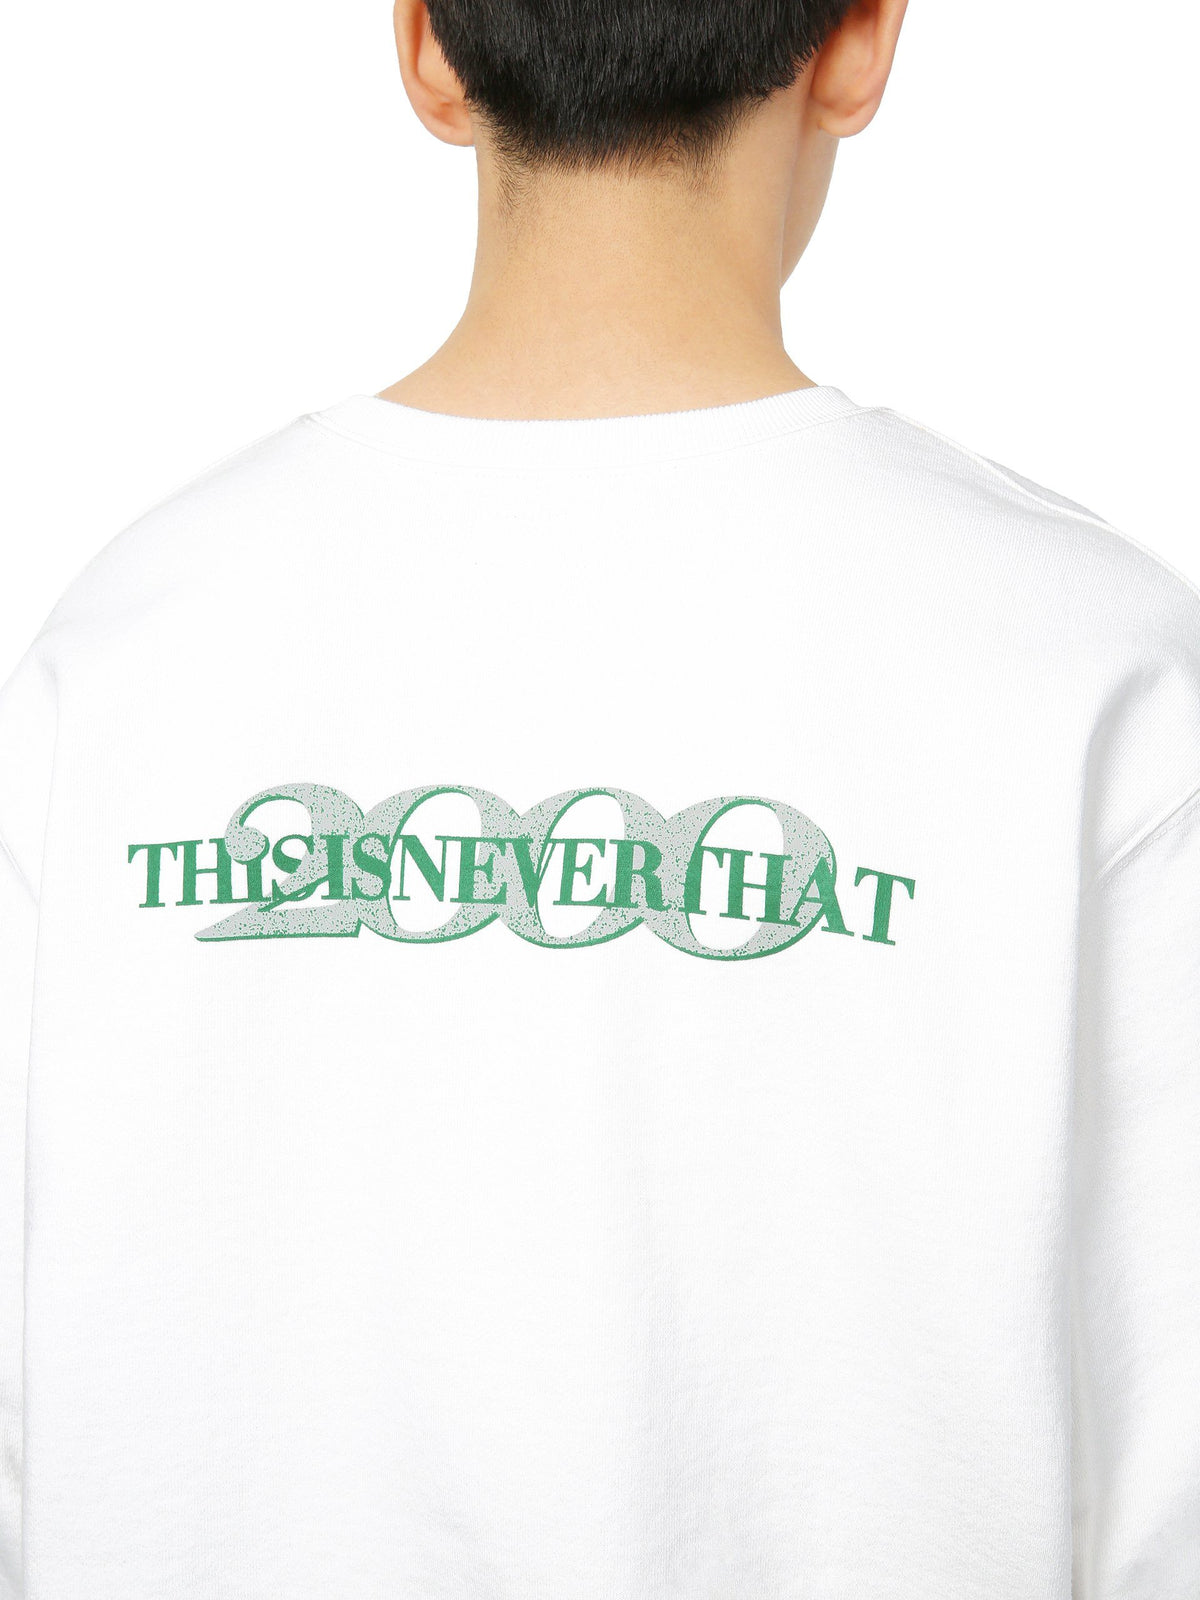 YEAR 2000 Crewneck Sweatshirts